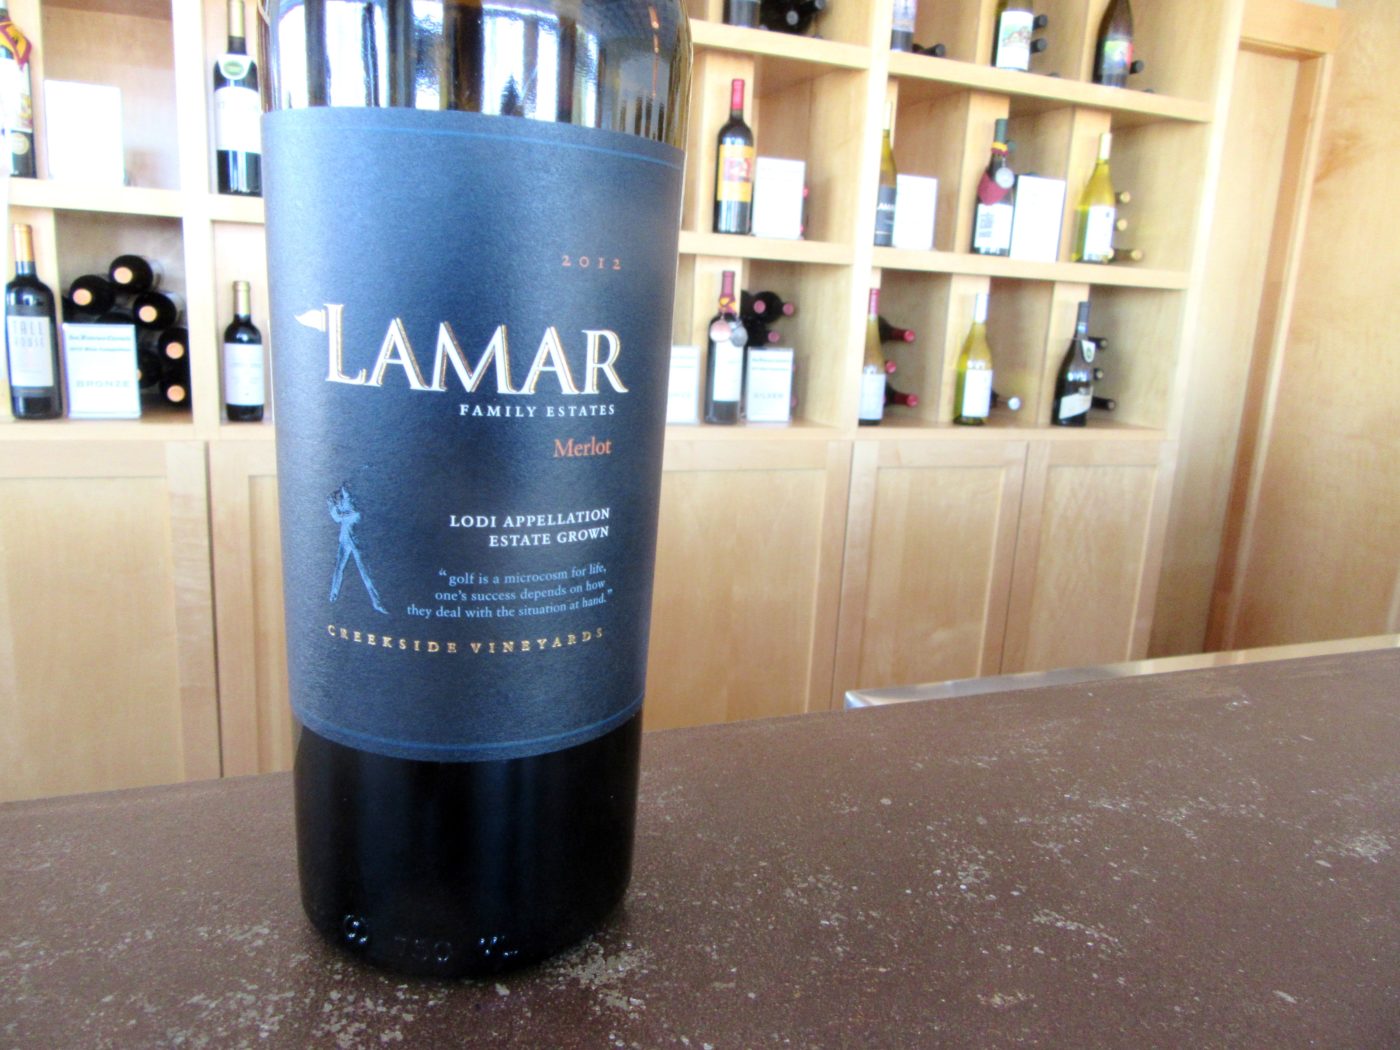 Lamar Family Estates, Merlot 2012, Creekside Vineyards, Lodi, California, Wine Casual